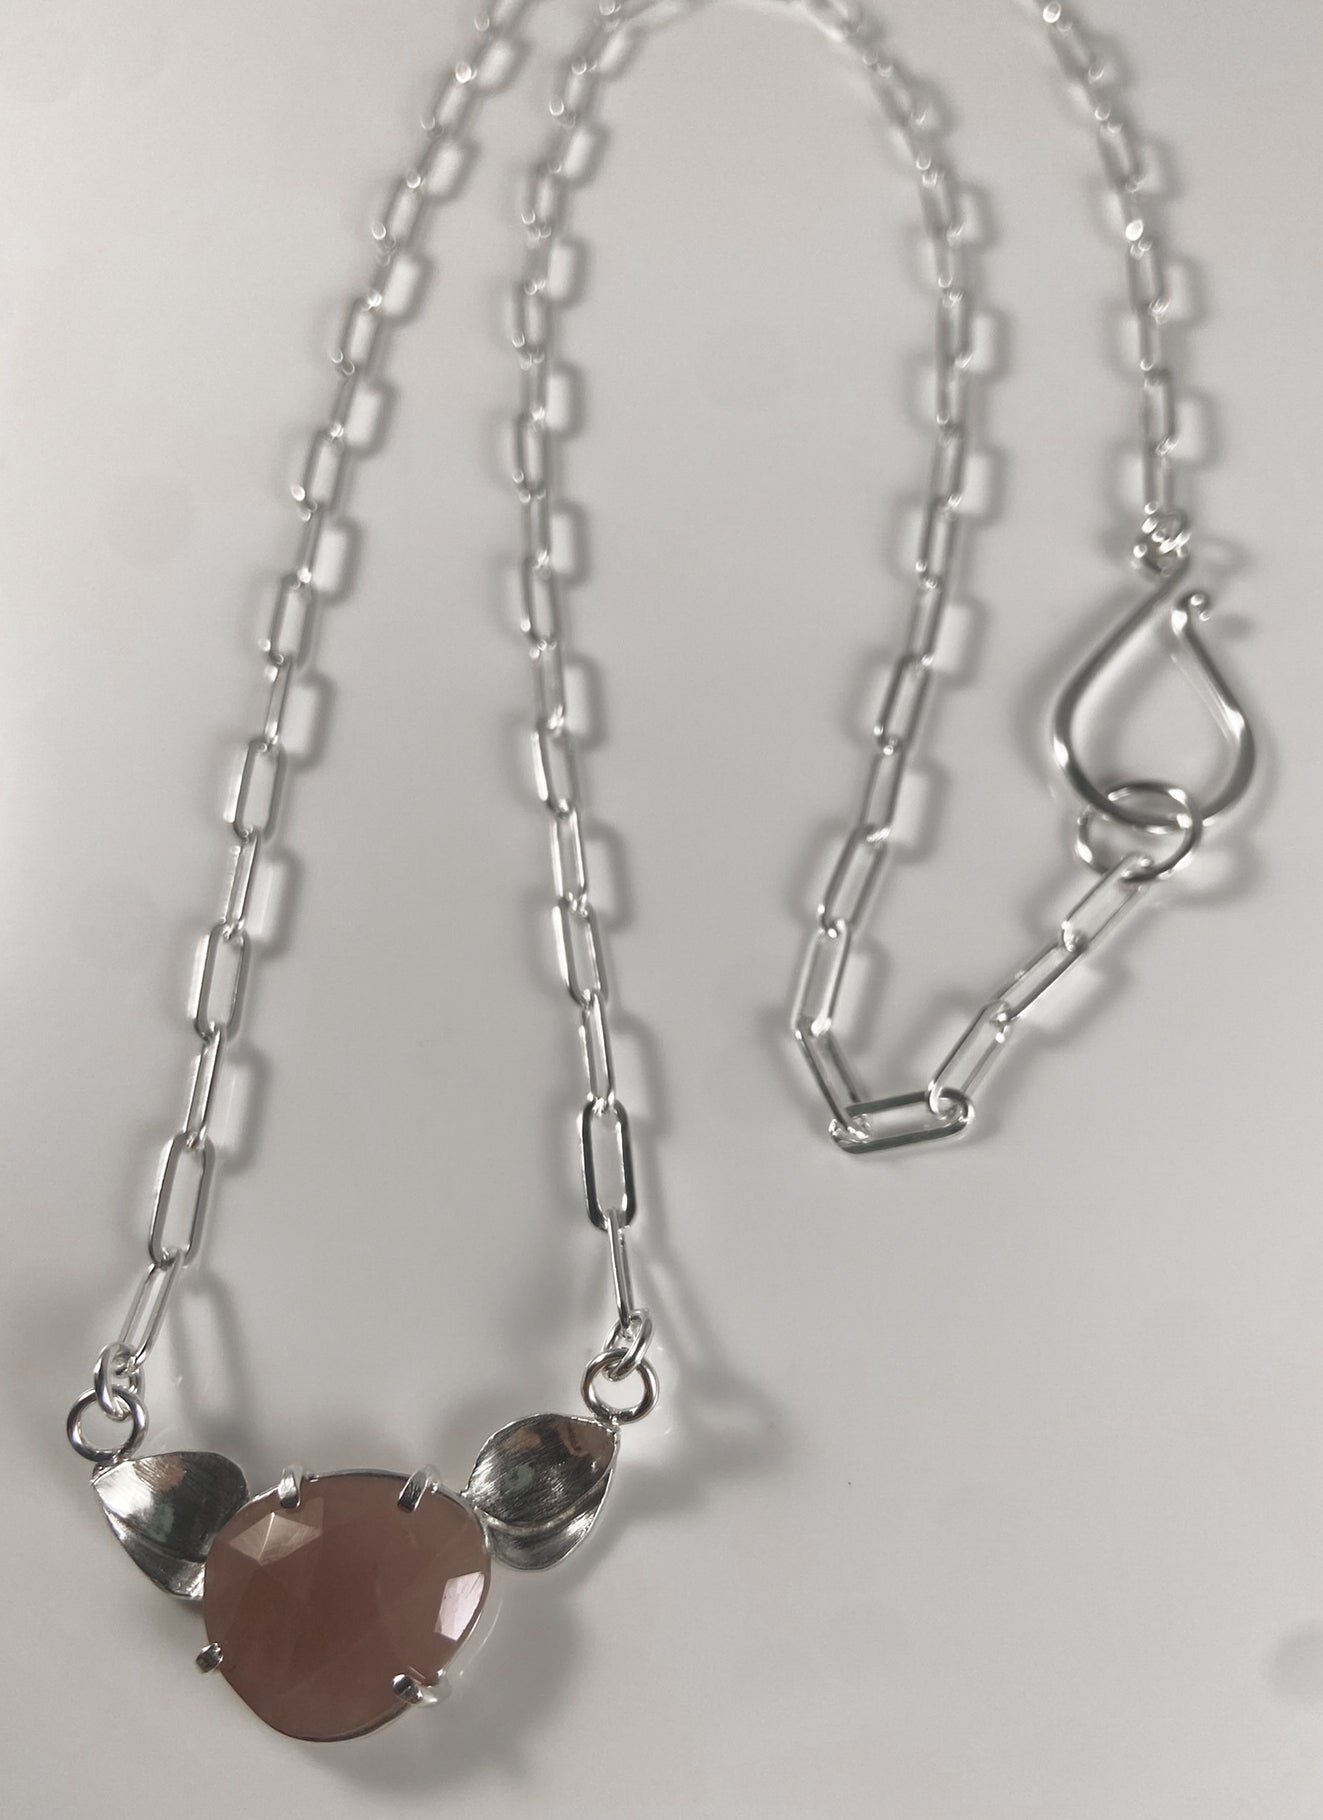 Rhodonite Necklace with Petals